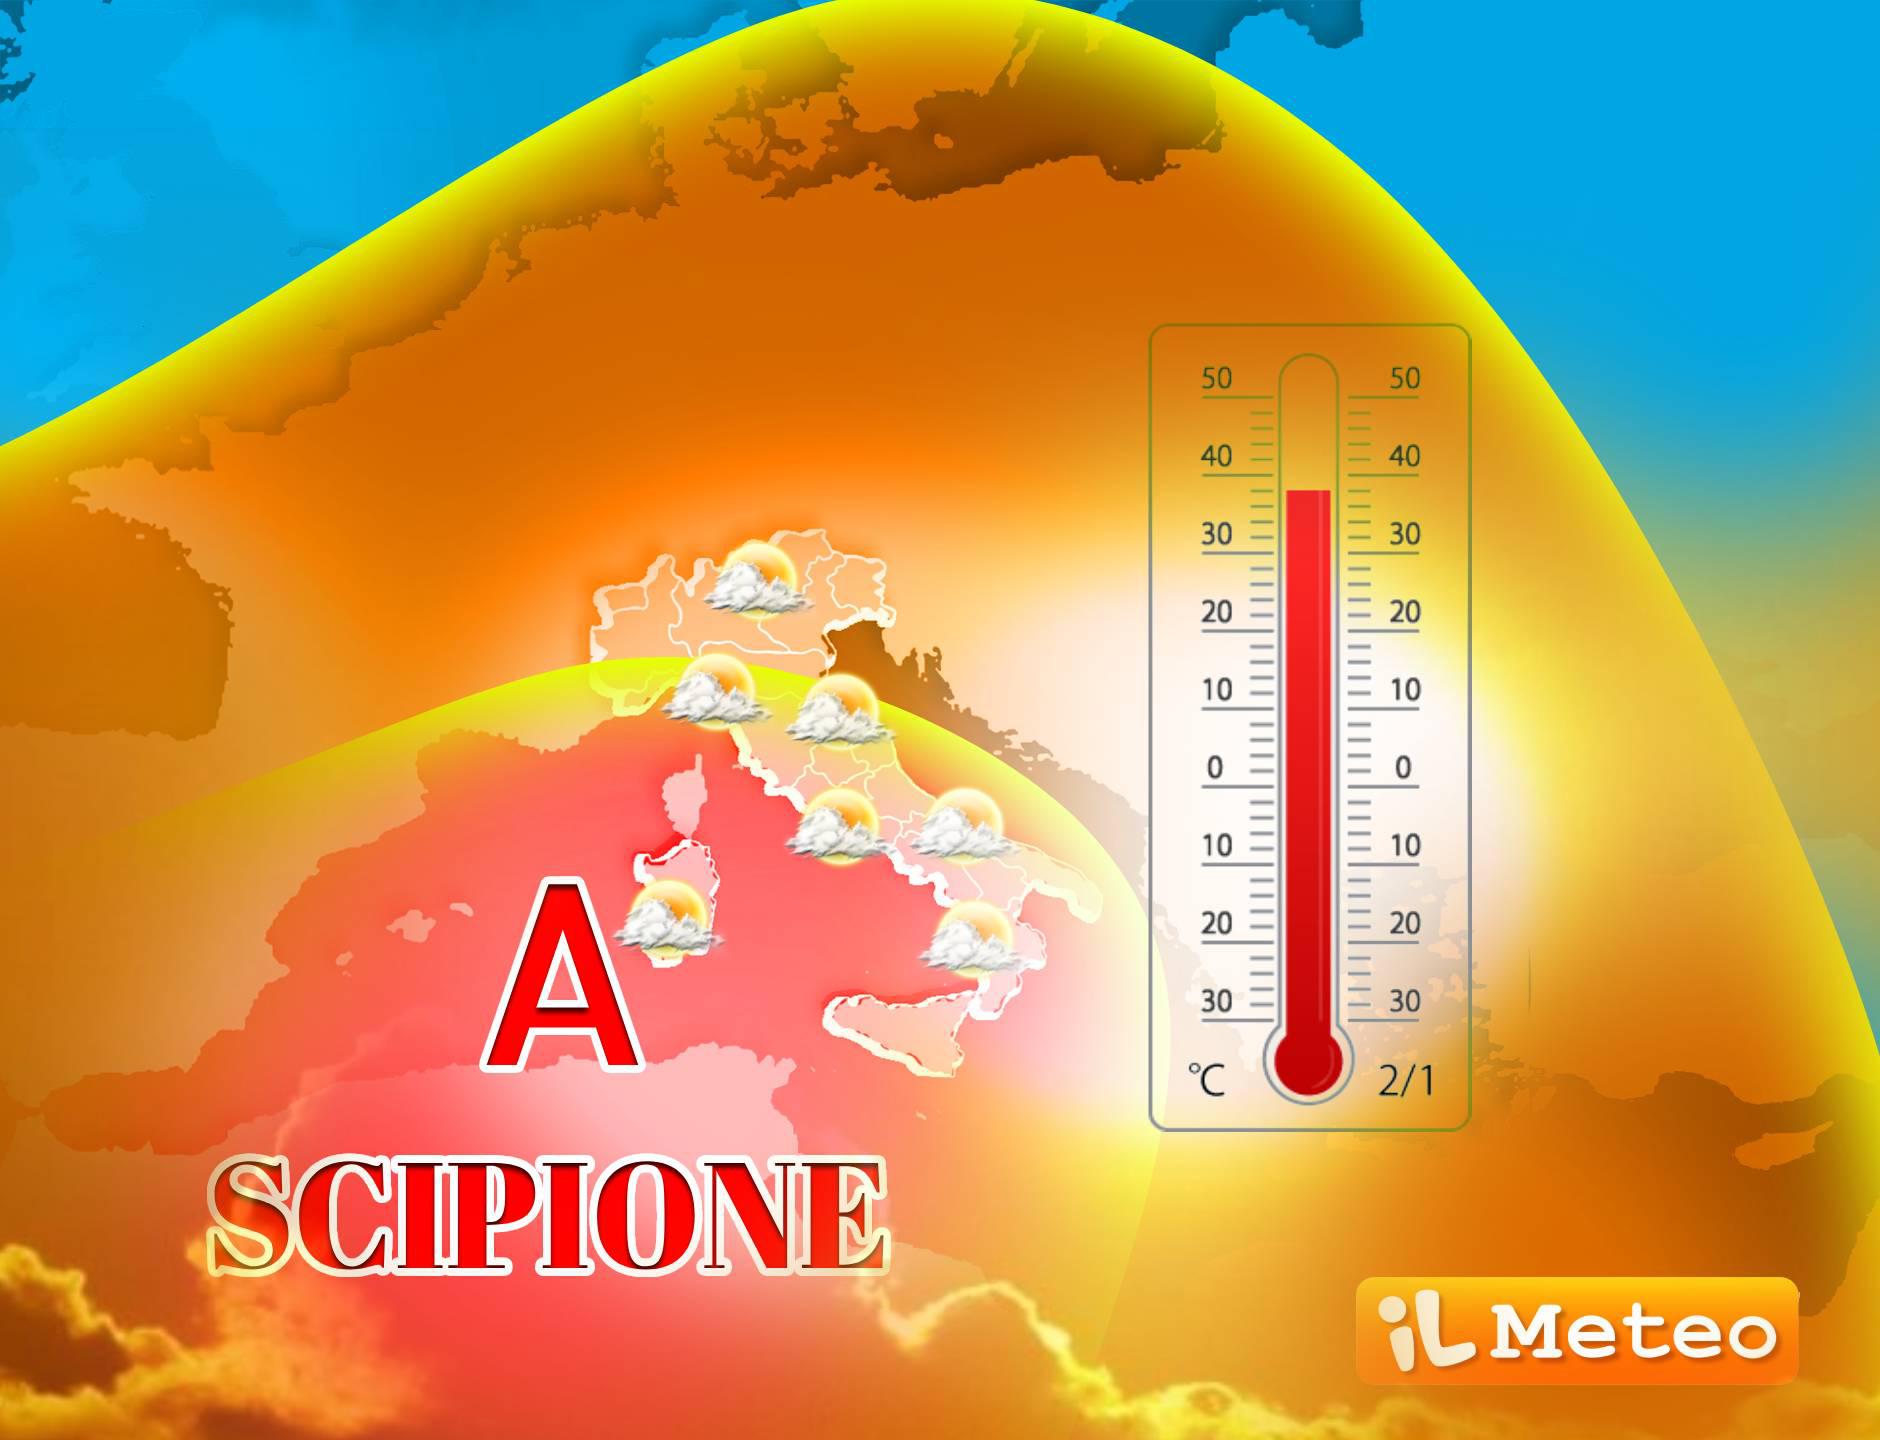 Prima ondata di caldo con l’anticiclone africano Scipione - picchi di 40°C